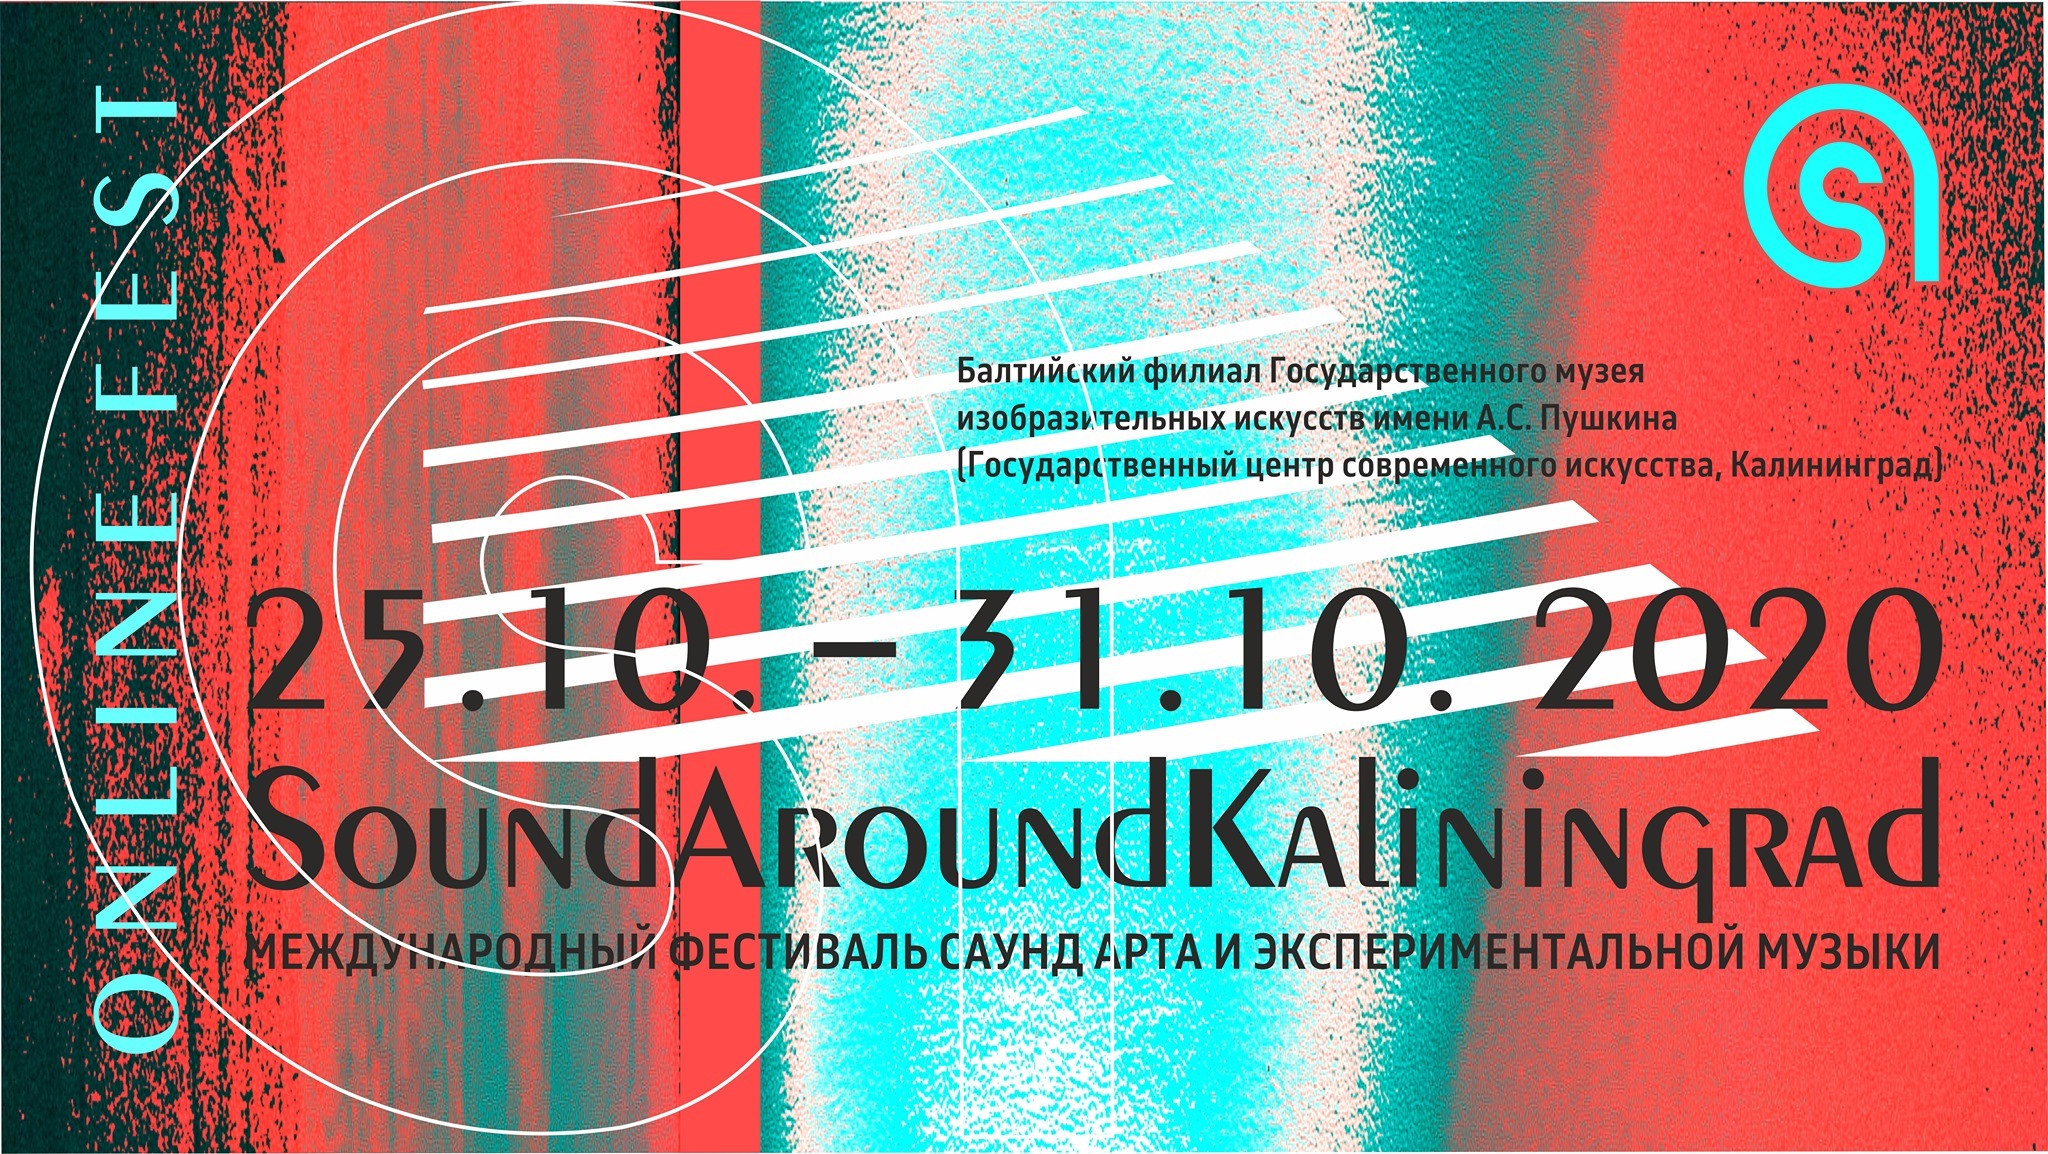 В Калининграде пройдет фестиваль Sound Around Kaliningrad